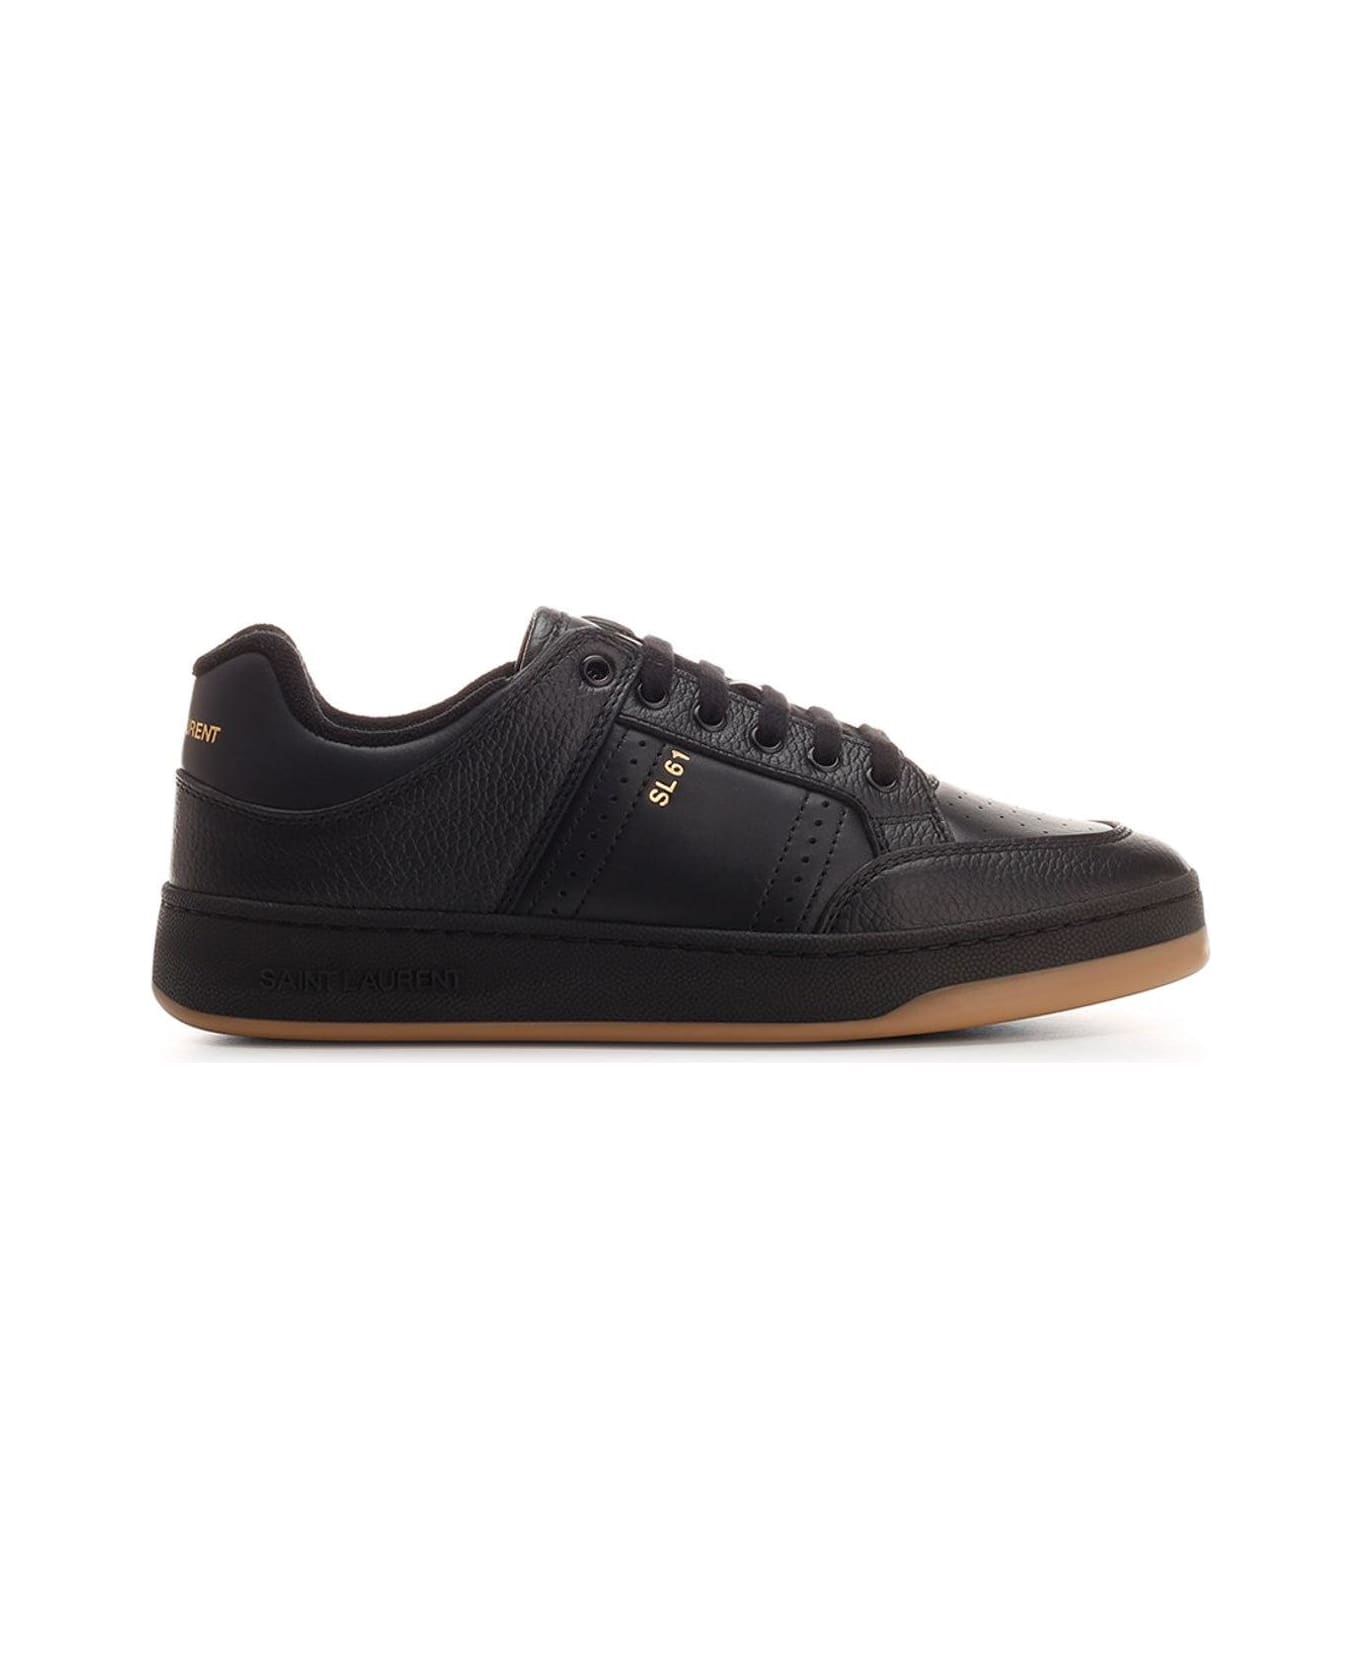 Saint Laurent Sl/61 Lace-up Sneakers - Black